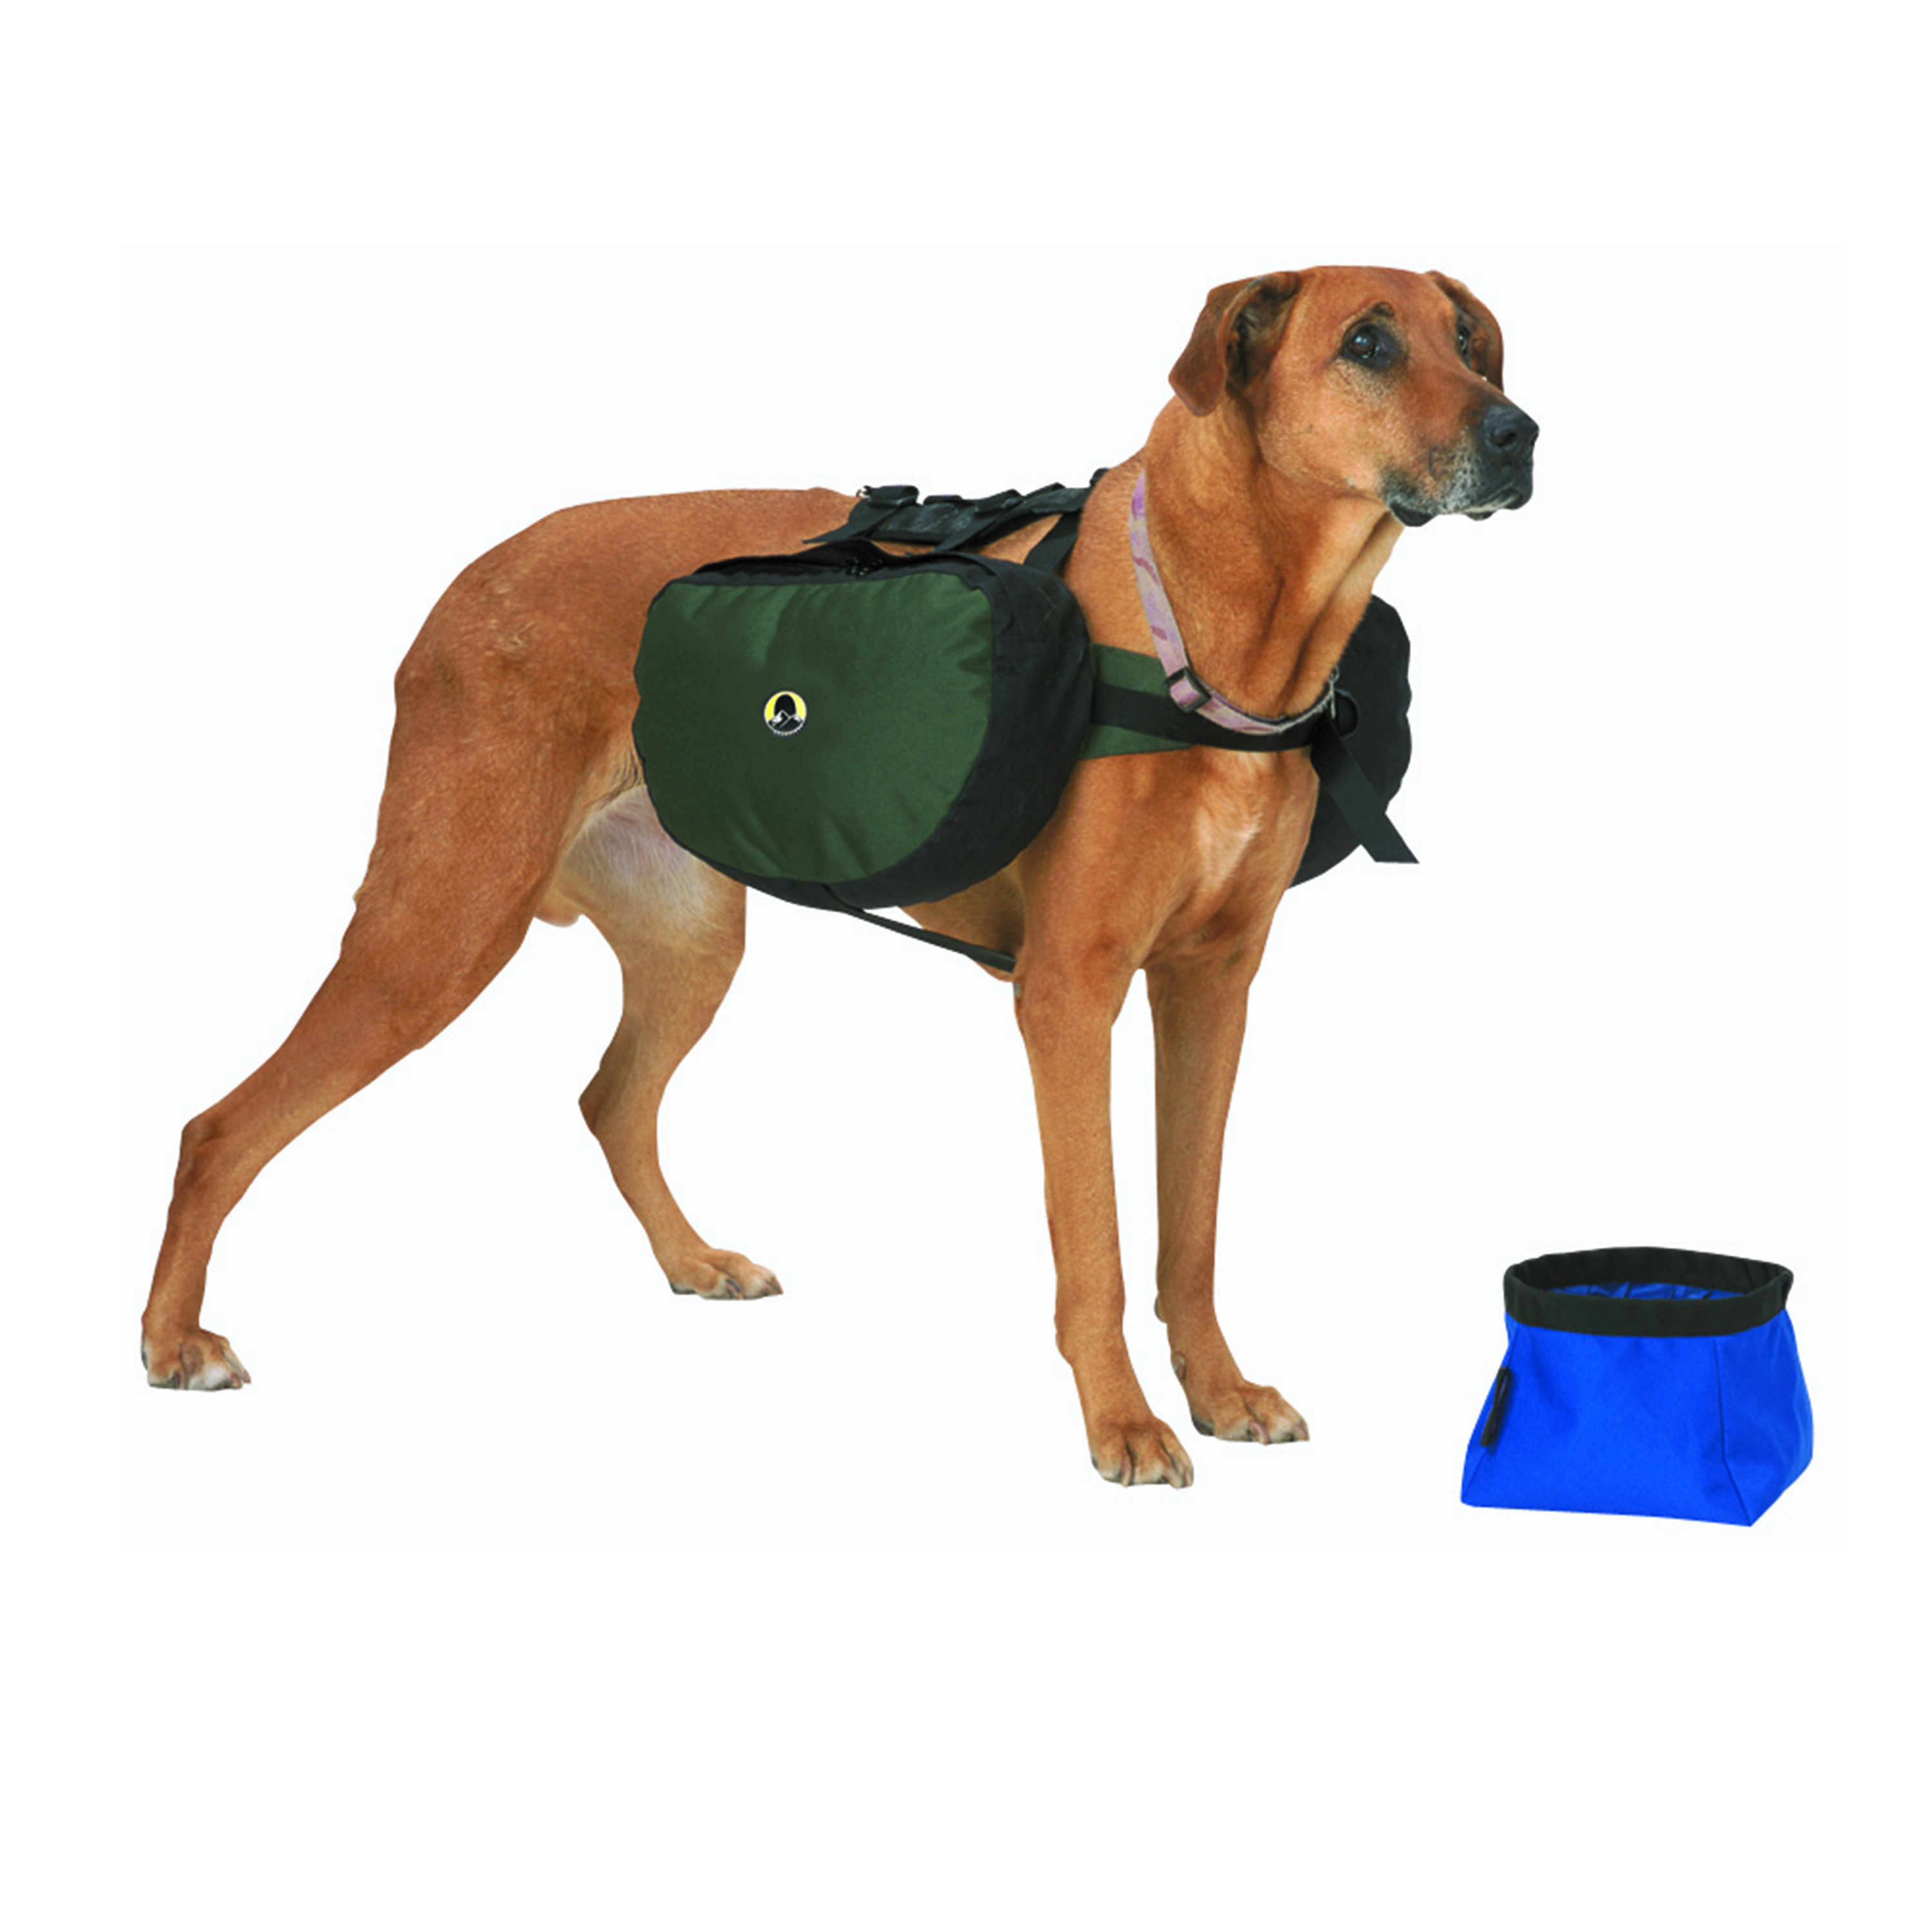 Stansport Saddle Bag for Dogs Blue Black - image 1 of 5